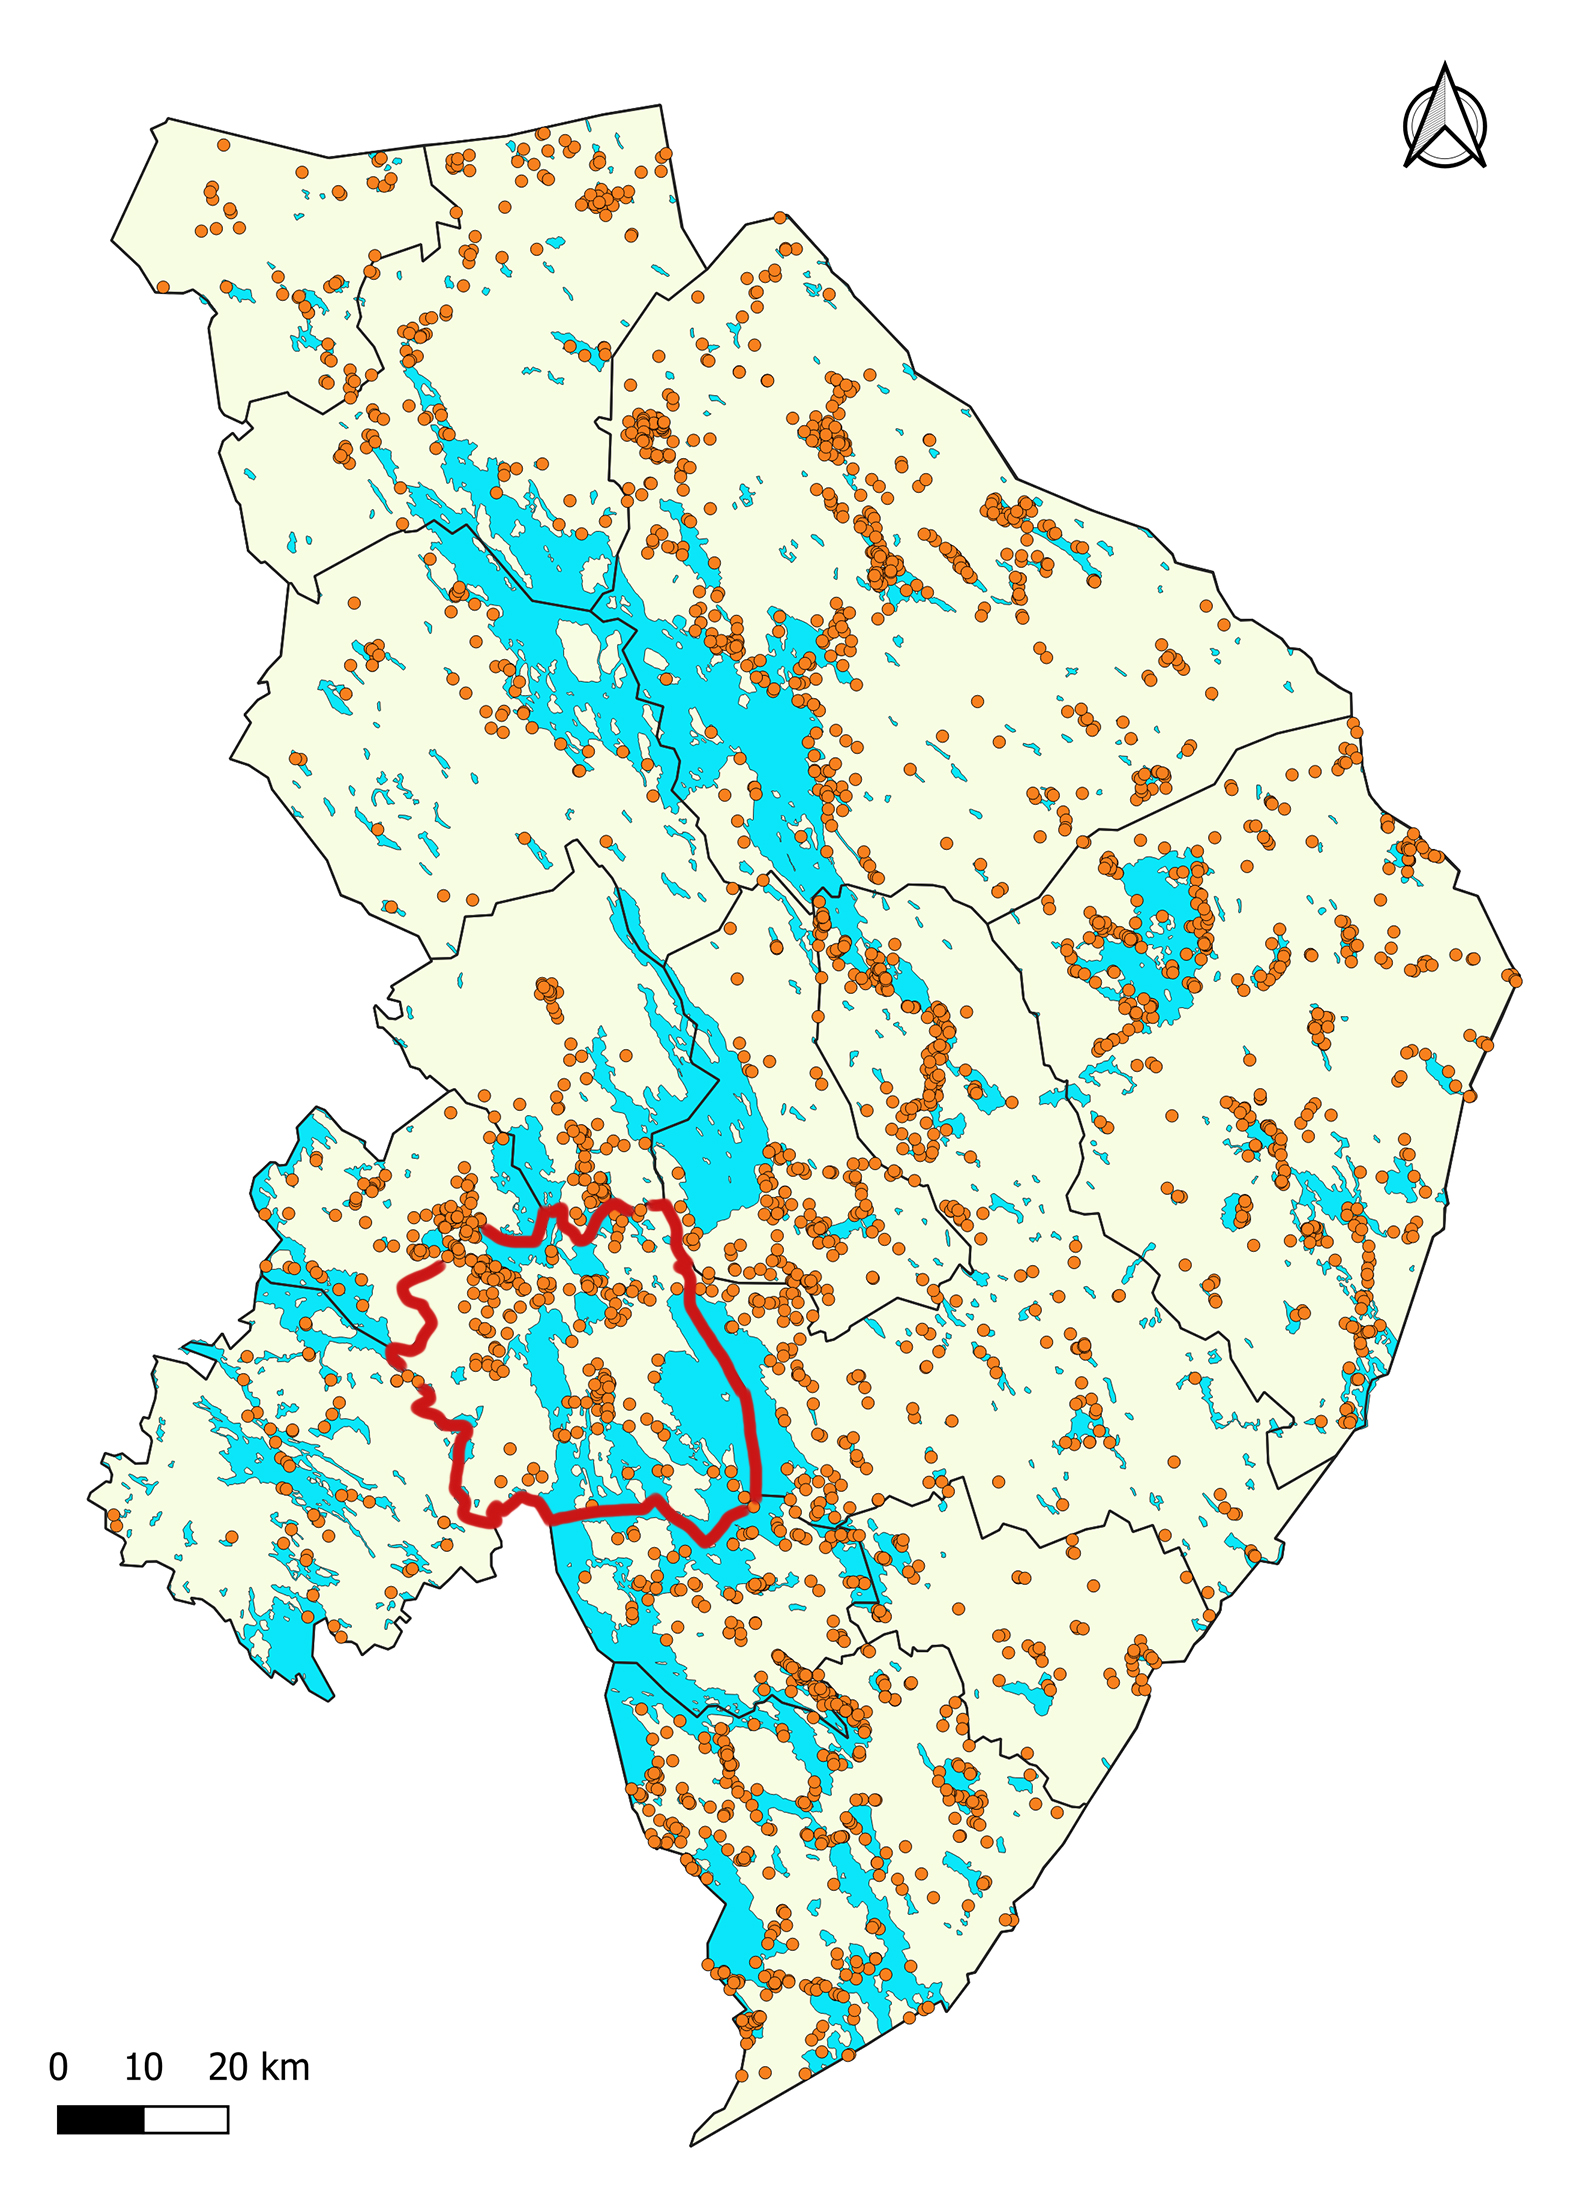 Liperin alueen kiinteät muinaisjäännökset. Kartassa Liperin kunnan rajat on piirretty punaisella, muut kunnat näkyvät mustin rajoin. Oranssit pallot kertovat löydöspaikoista. Vesistöt on merkitty sinisellä.